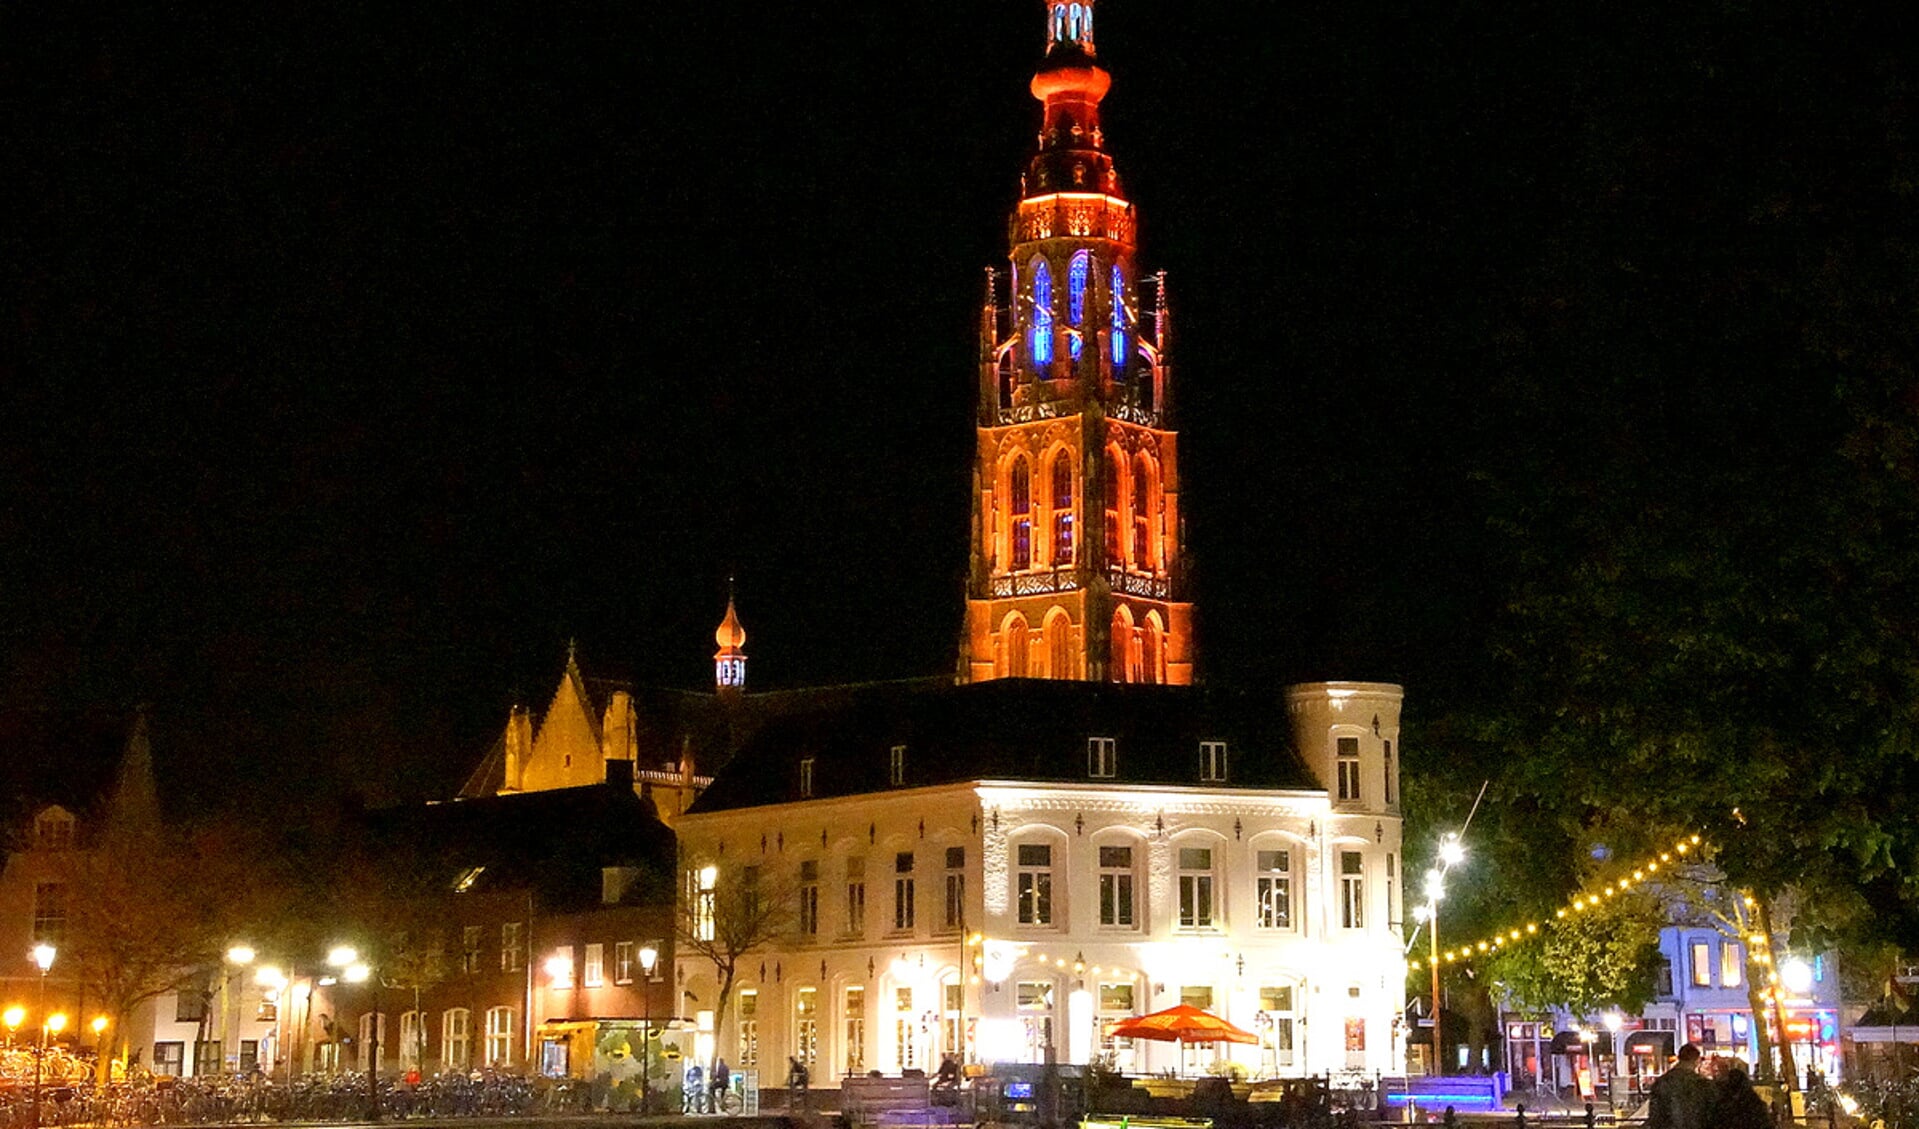 De Grote Kerk in een oranje gloed op Koningsnacht 2017.